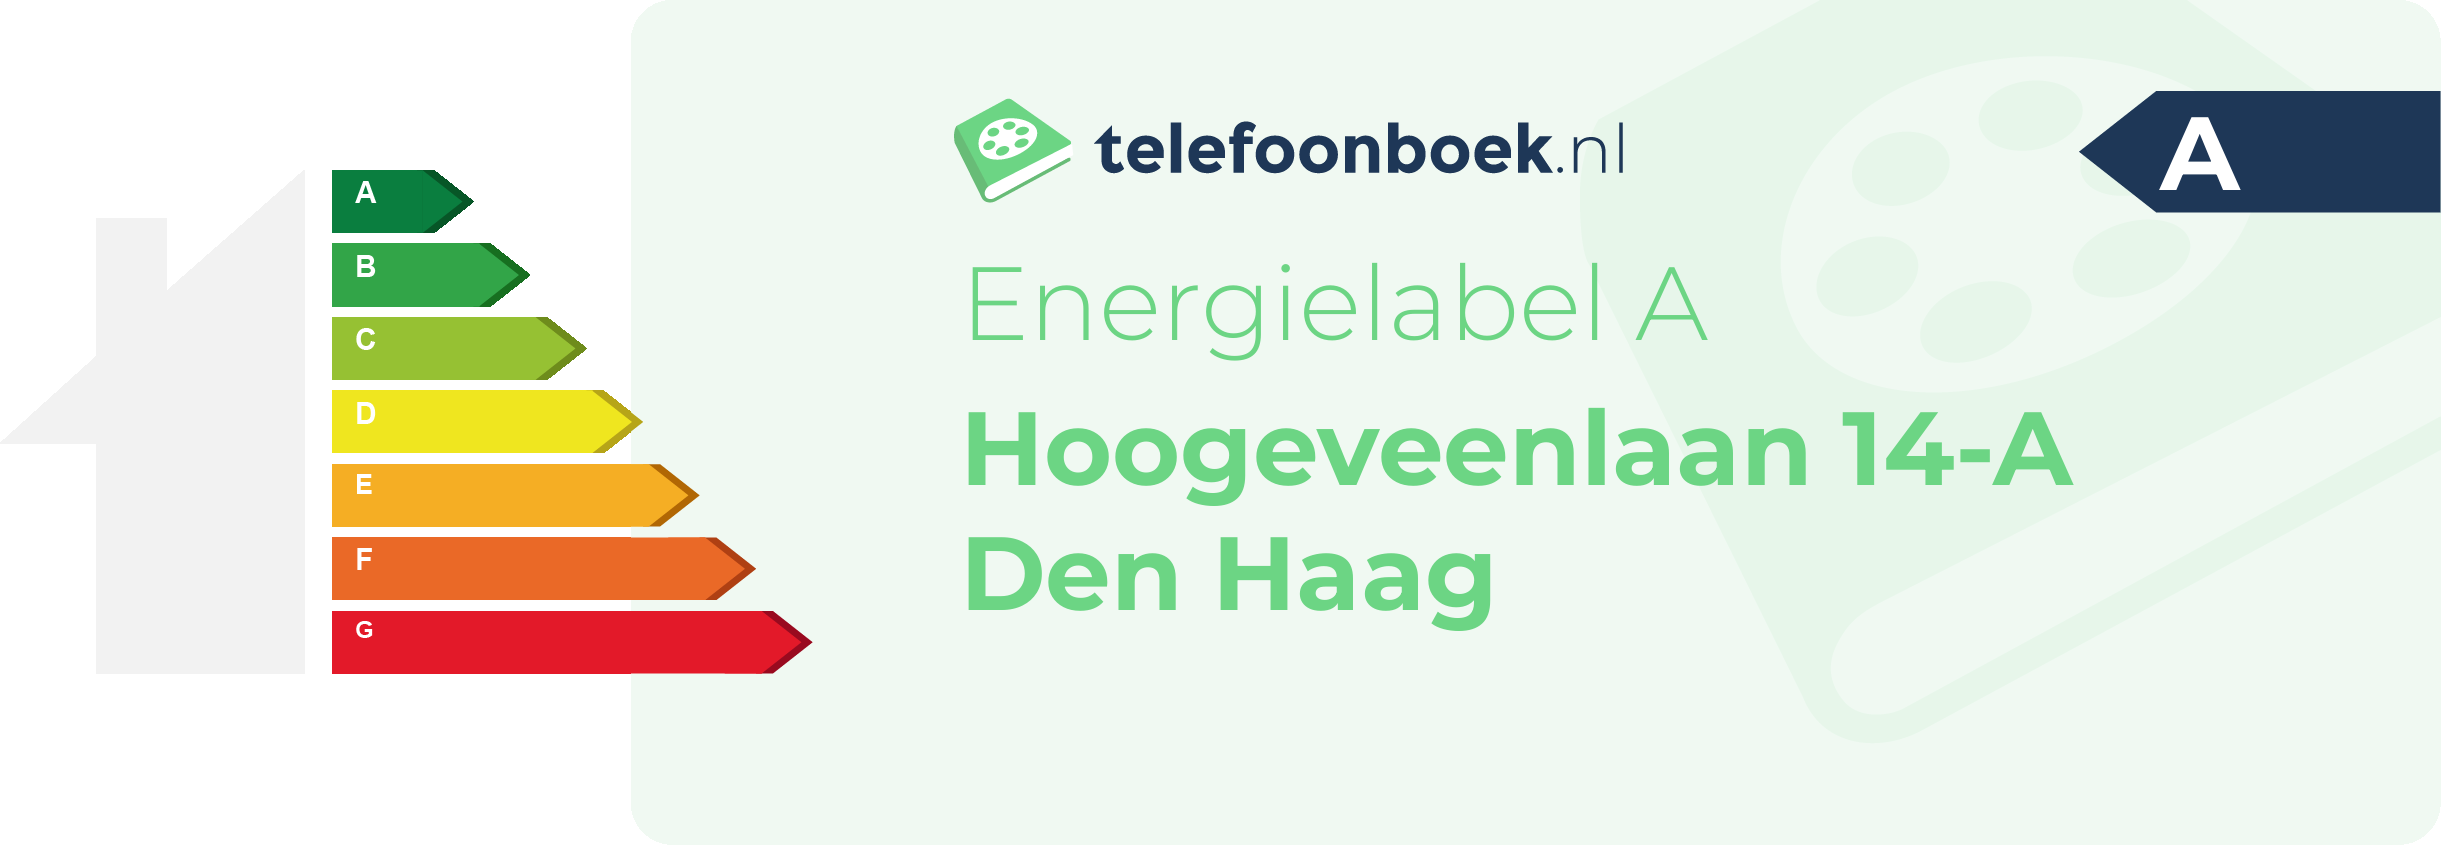 Energielabel Hoogeveenlaan 14-A Den Haag